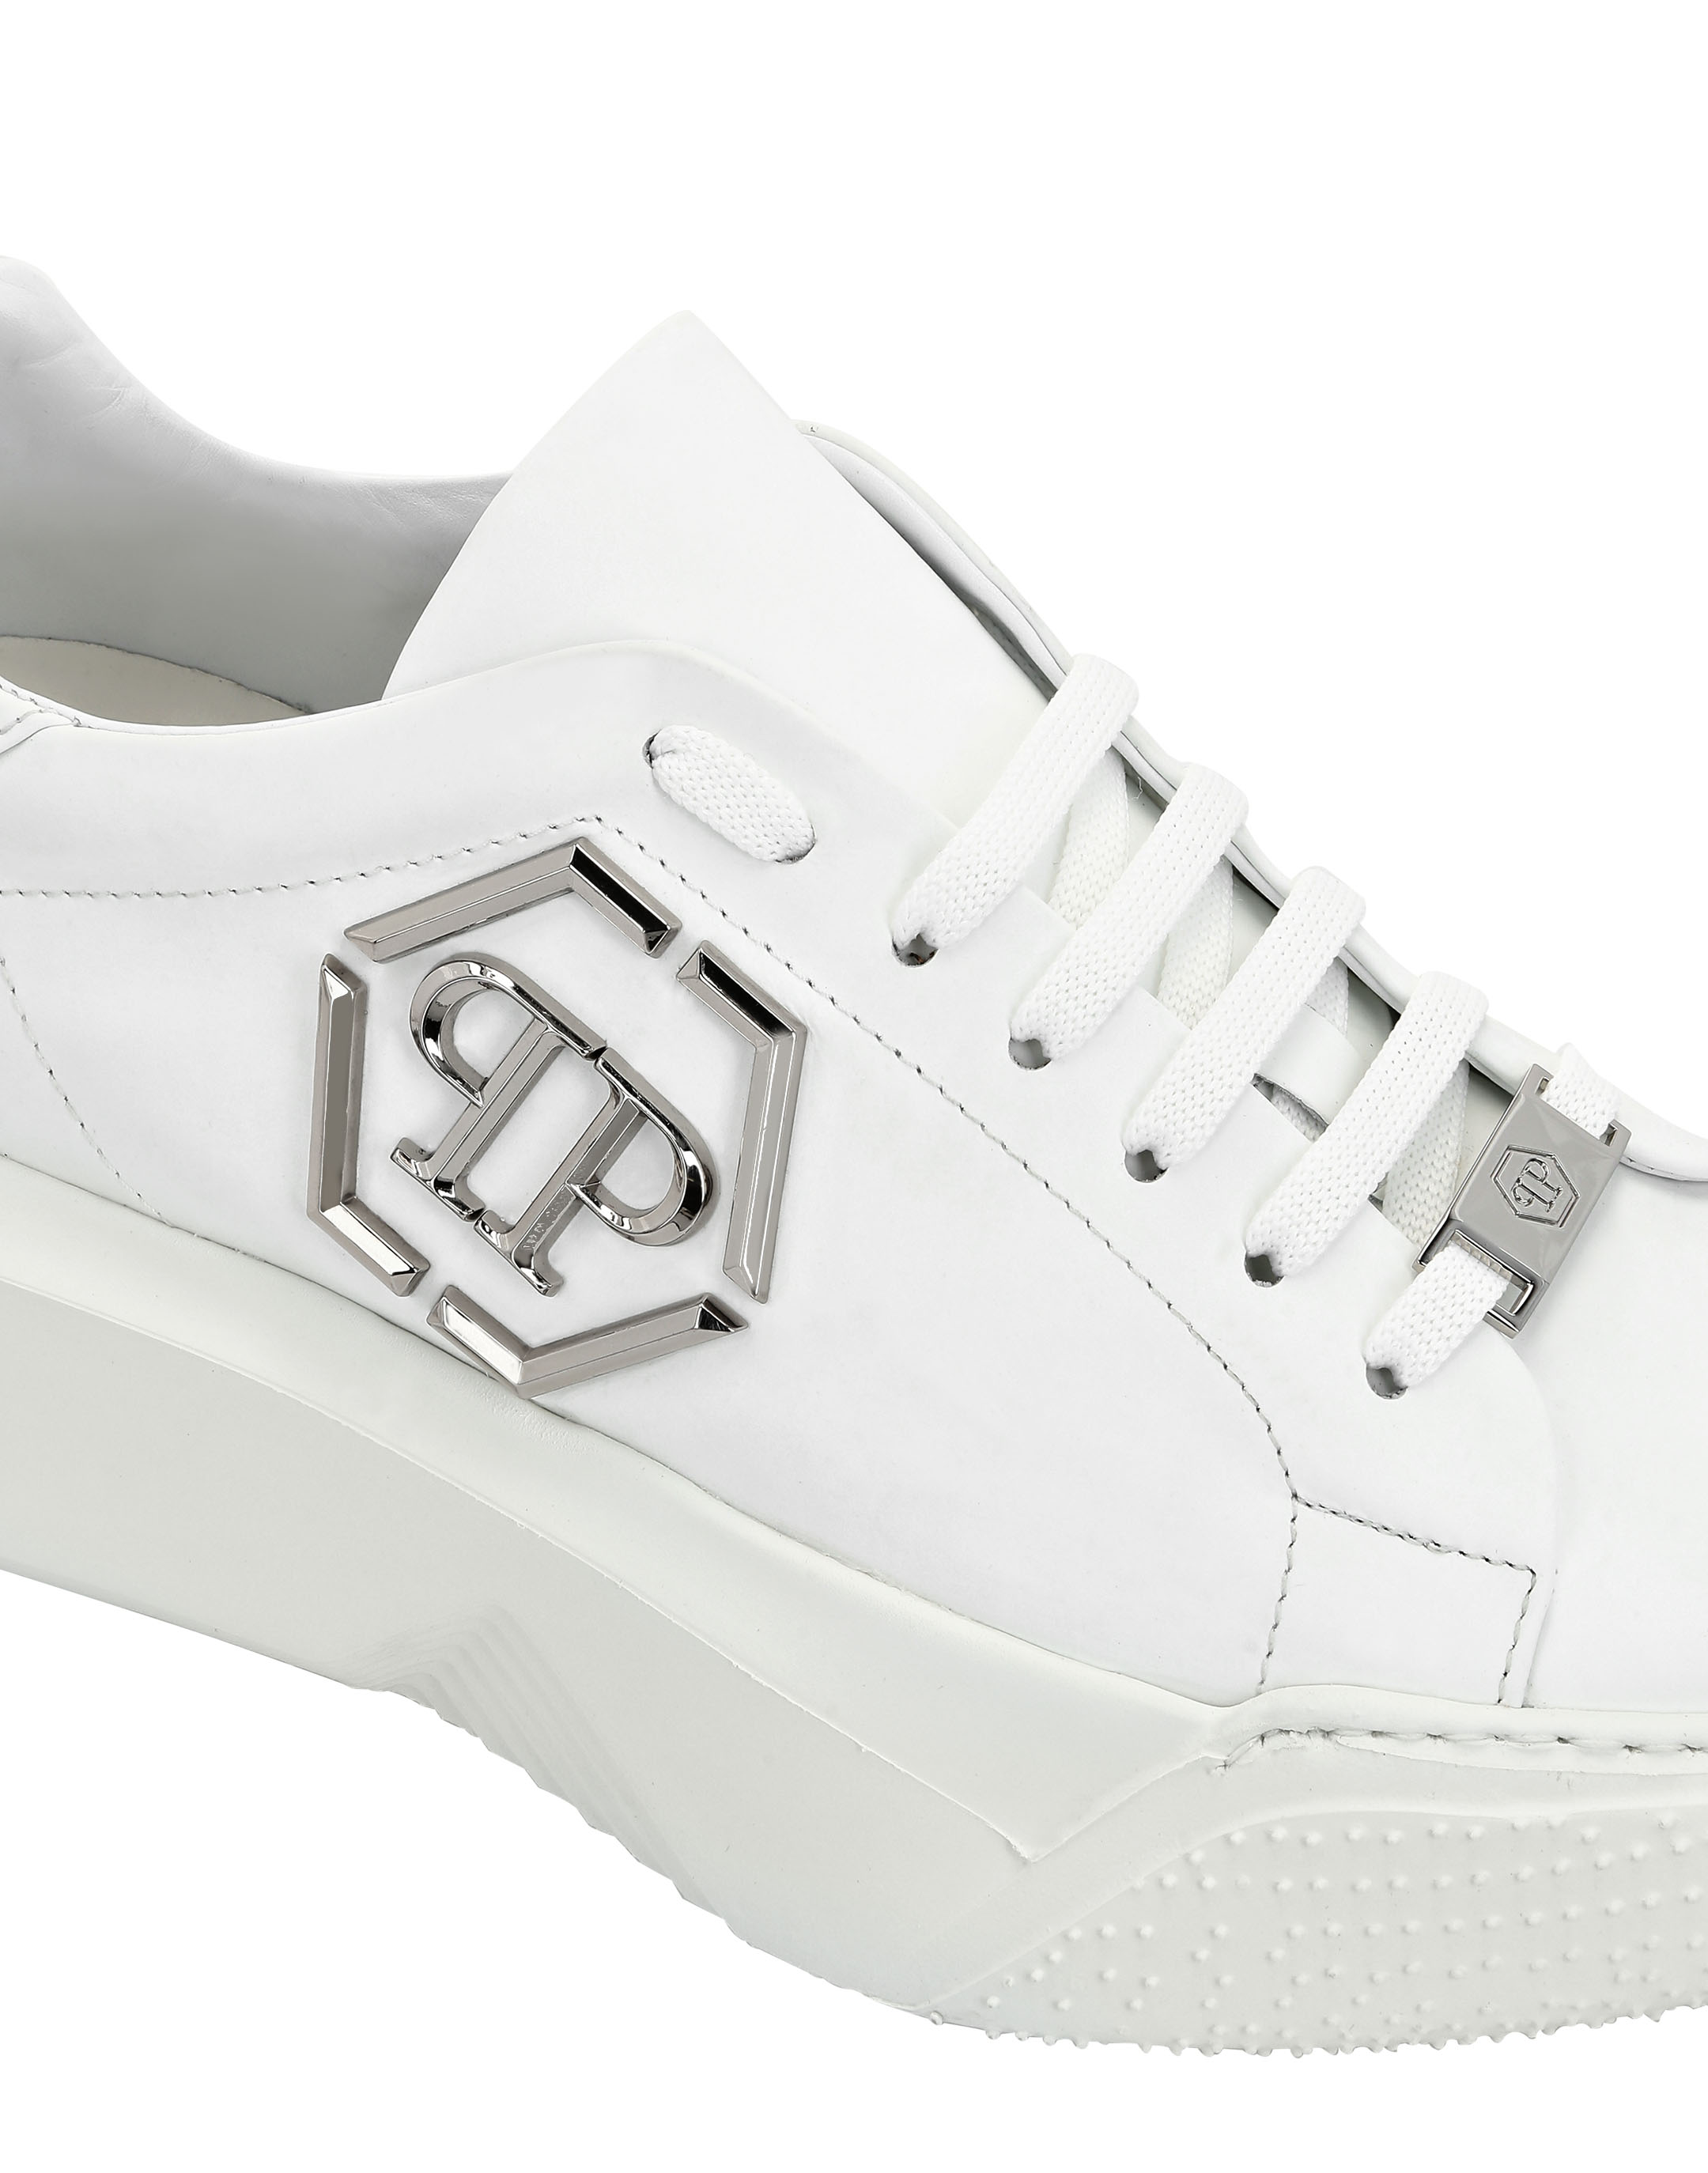 philipp plein white sneakers